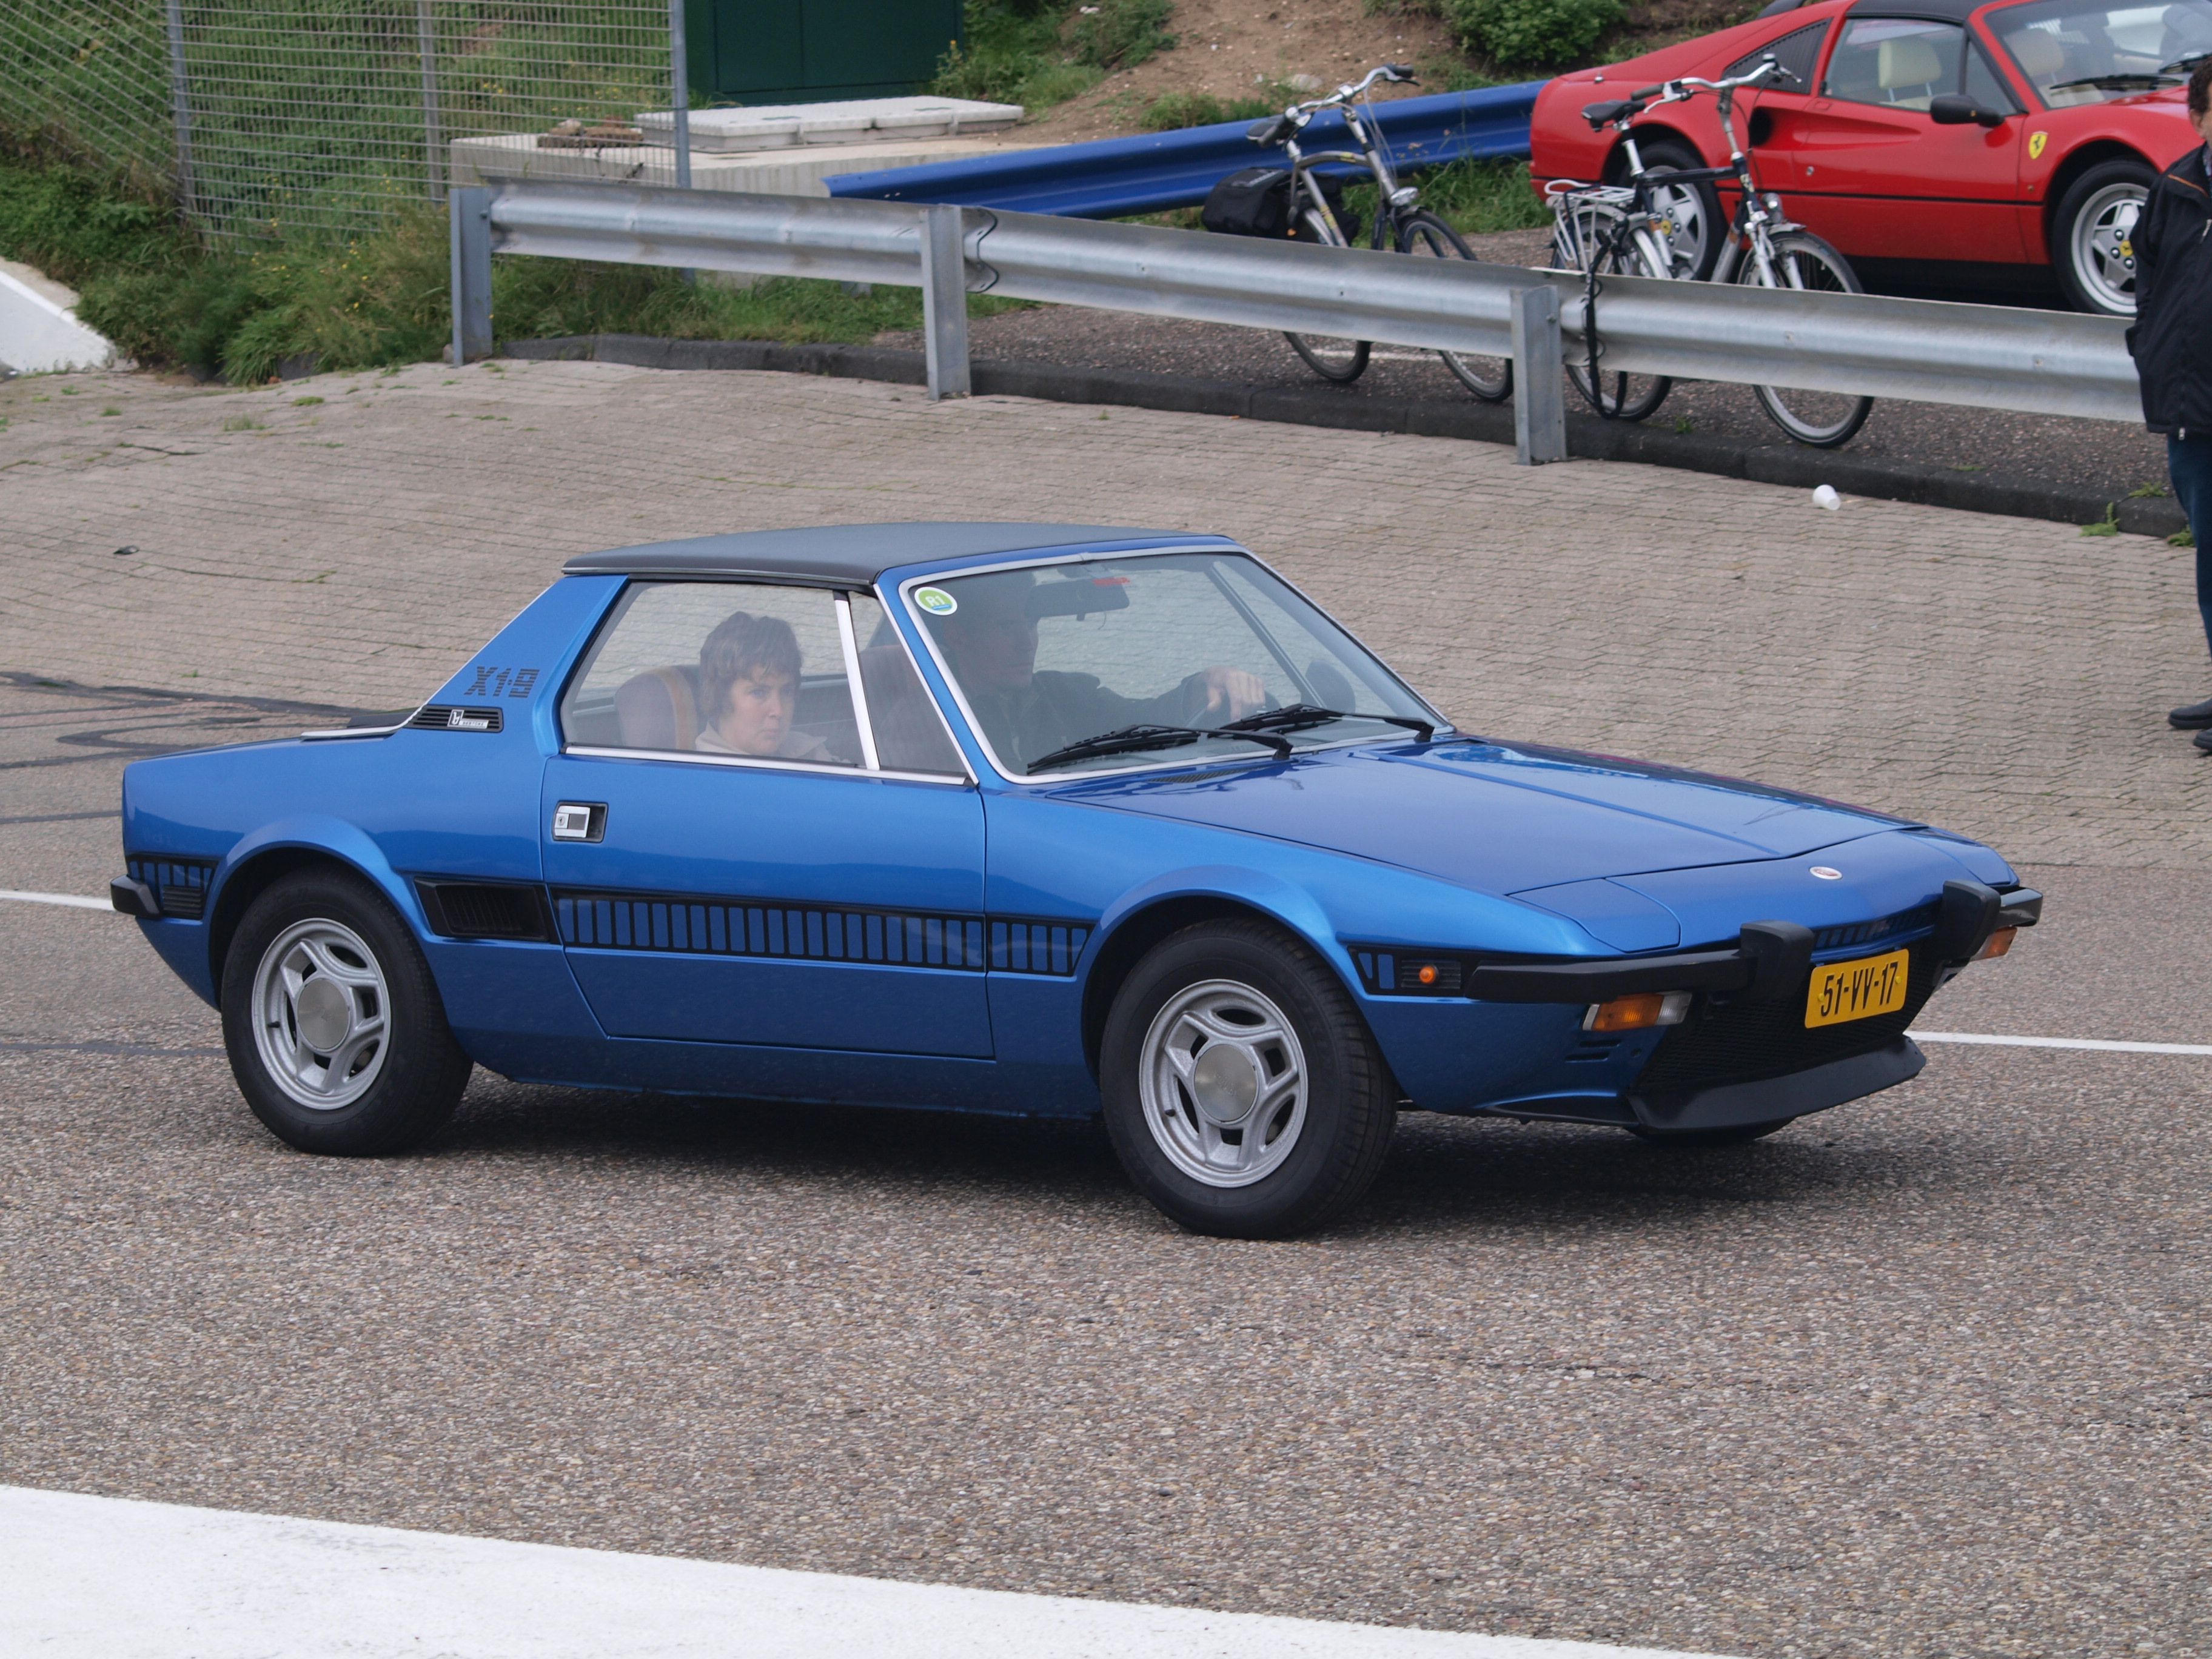 Blue Fiat x1/9